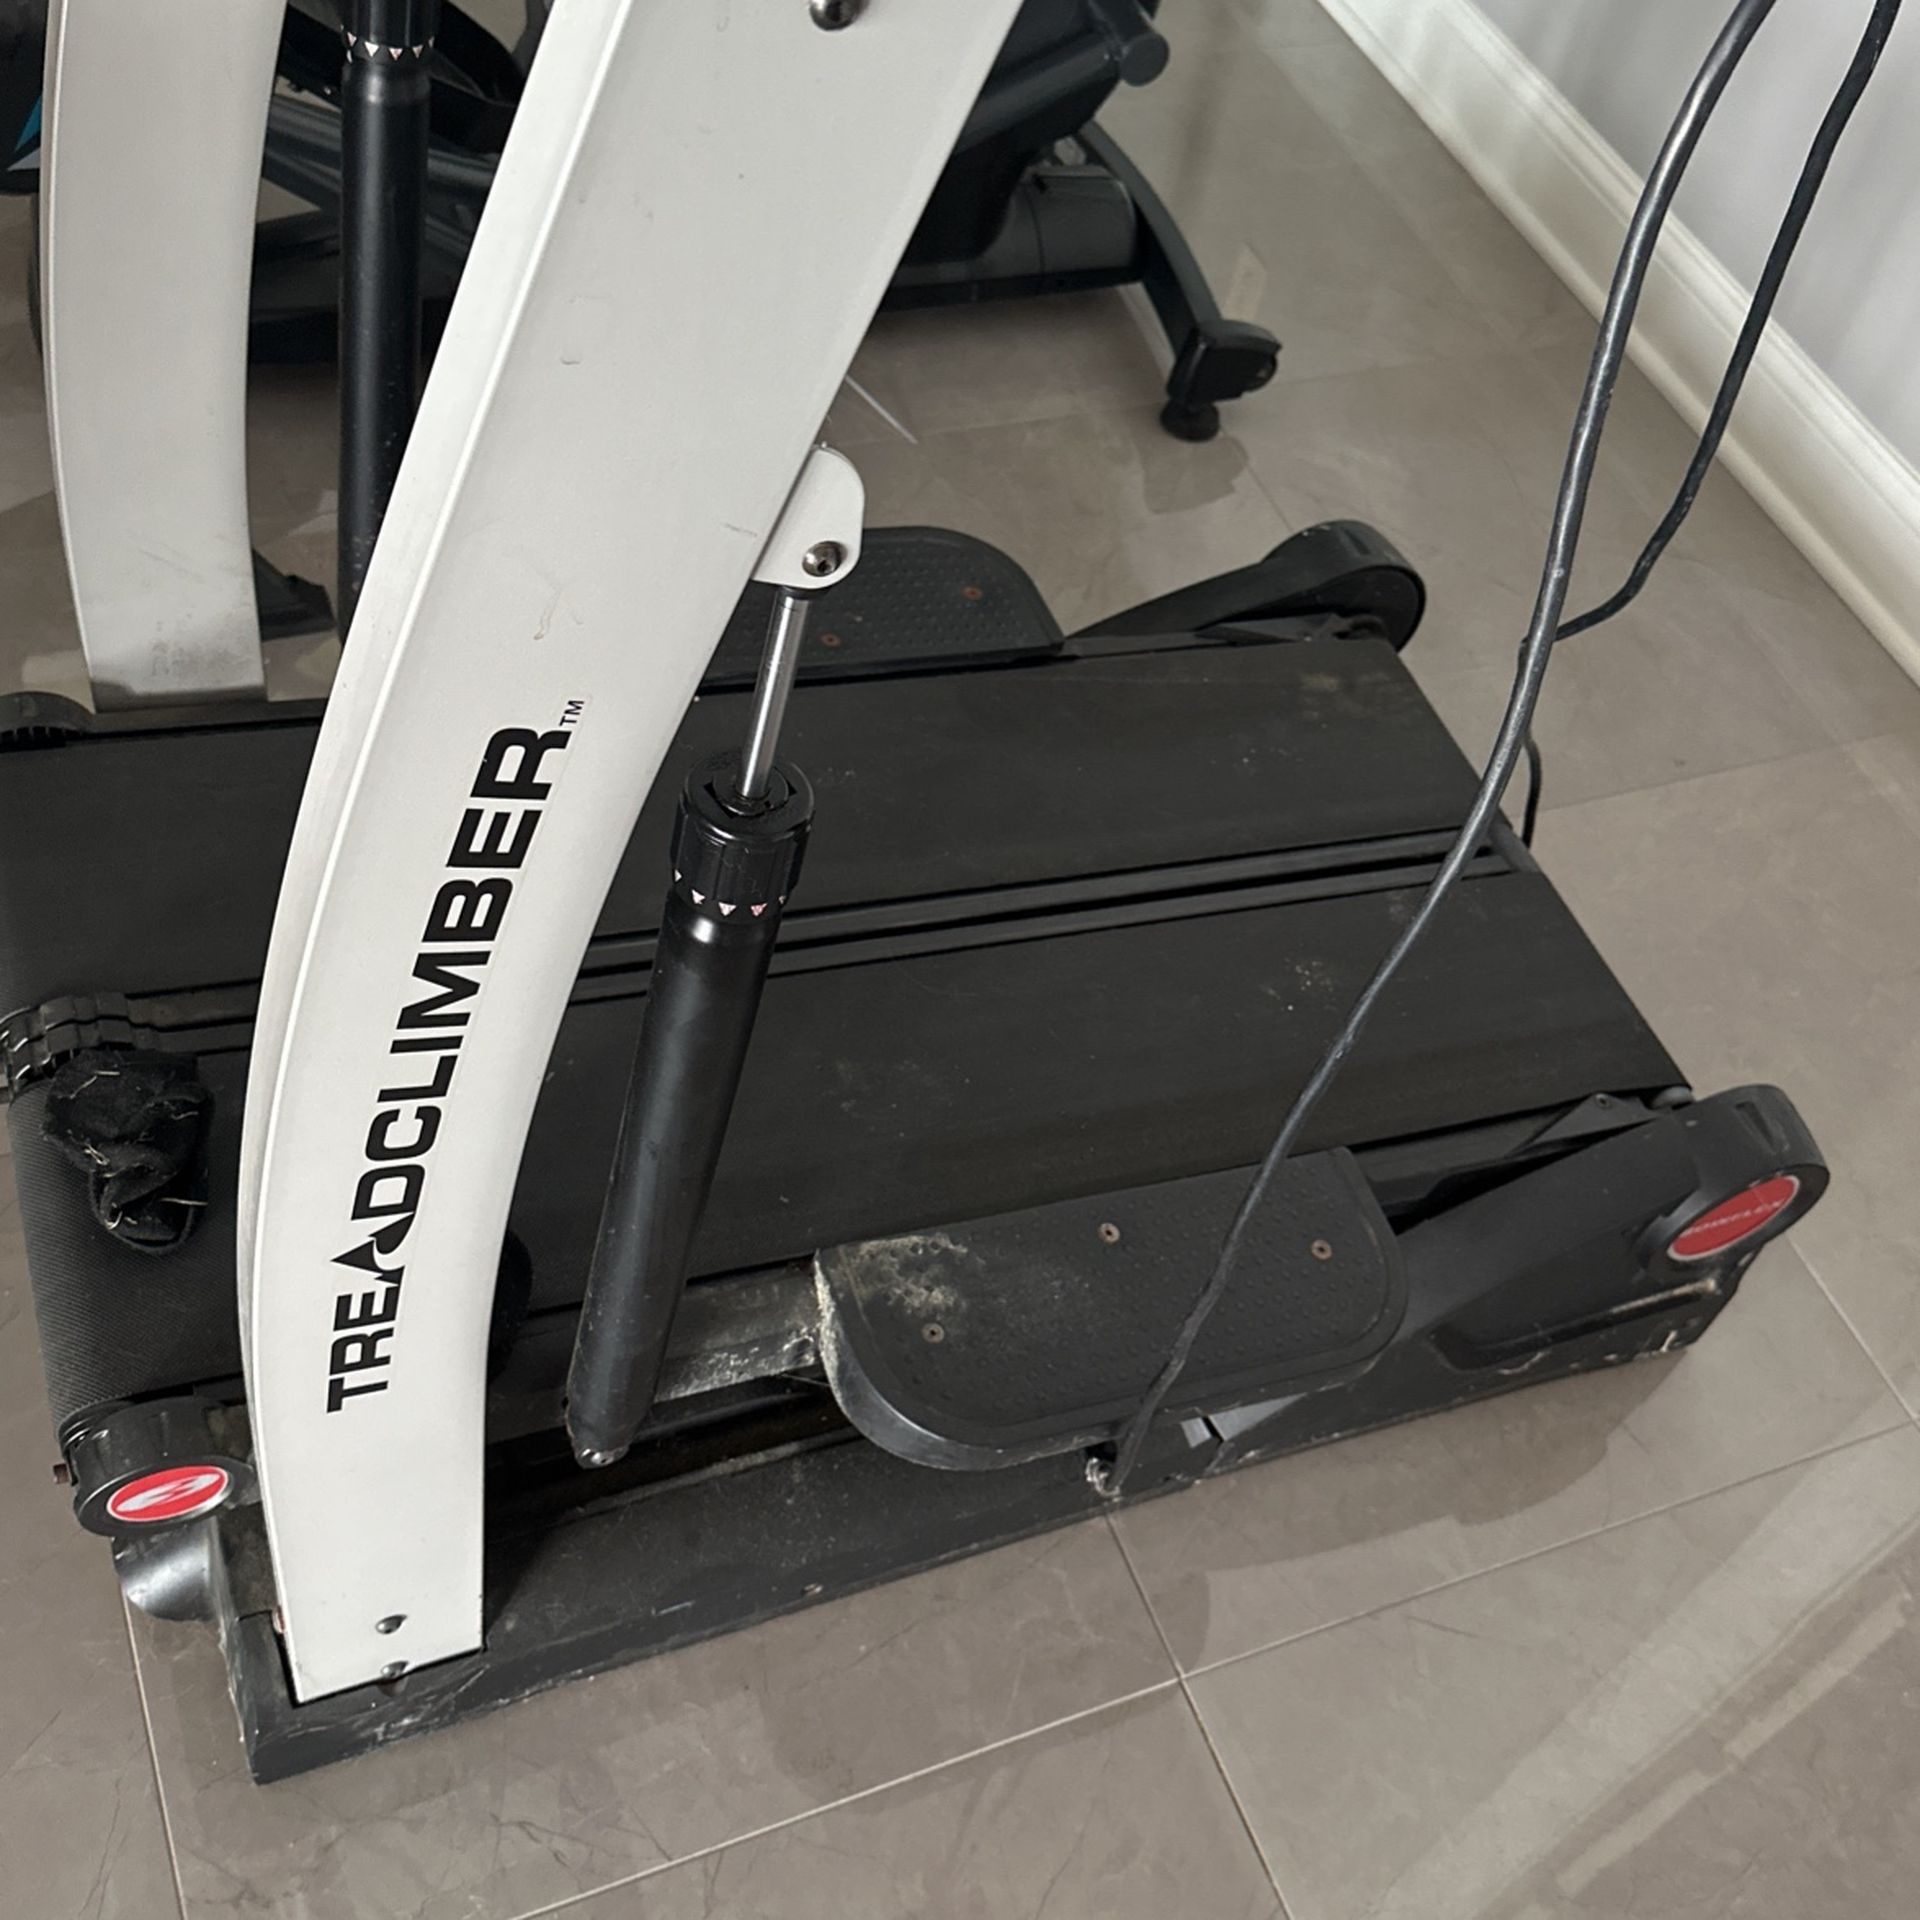 Treadmill Bowflex Nautilus TC1000 Exercise Running Equipment